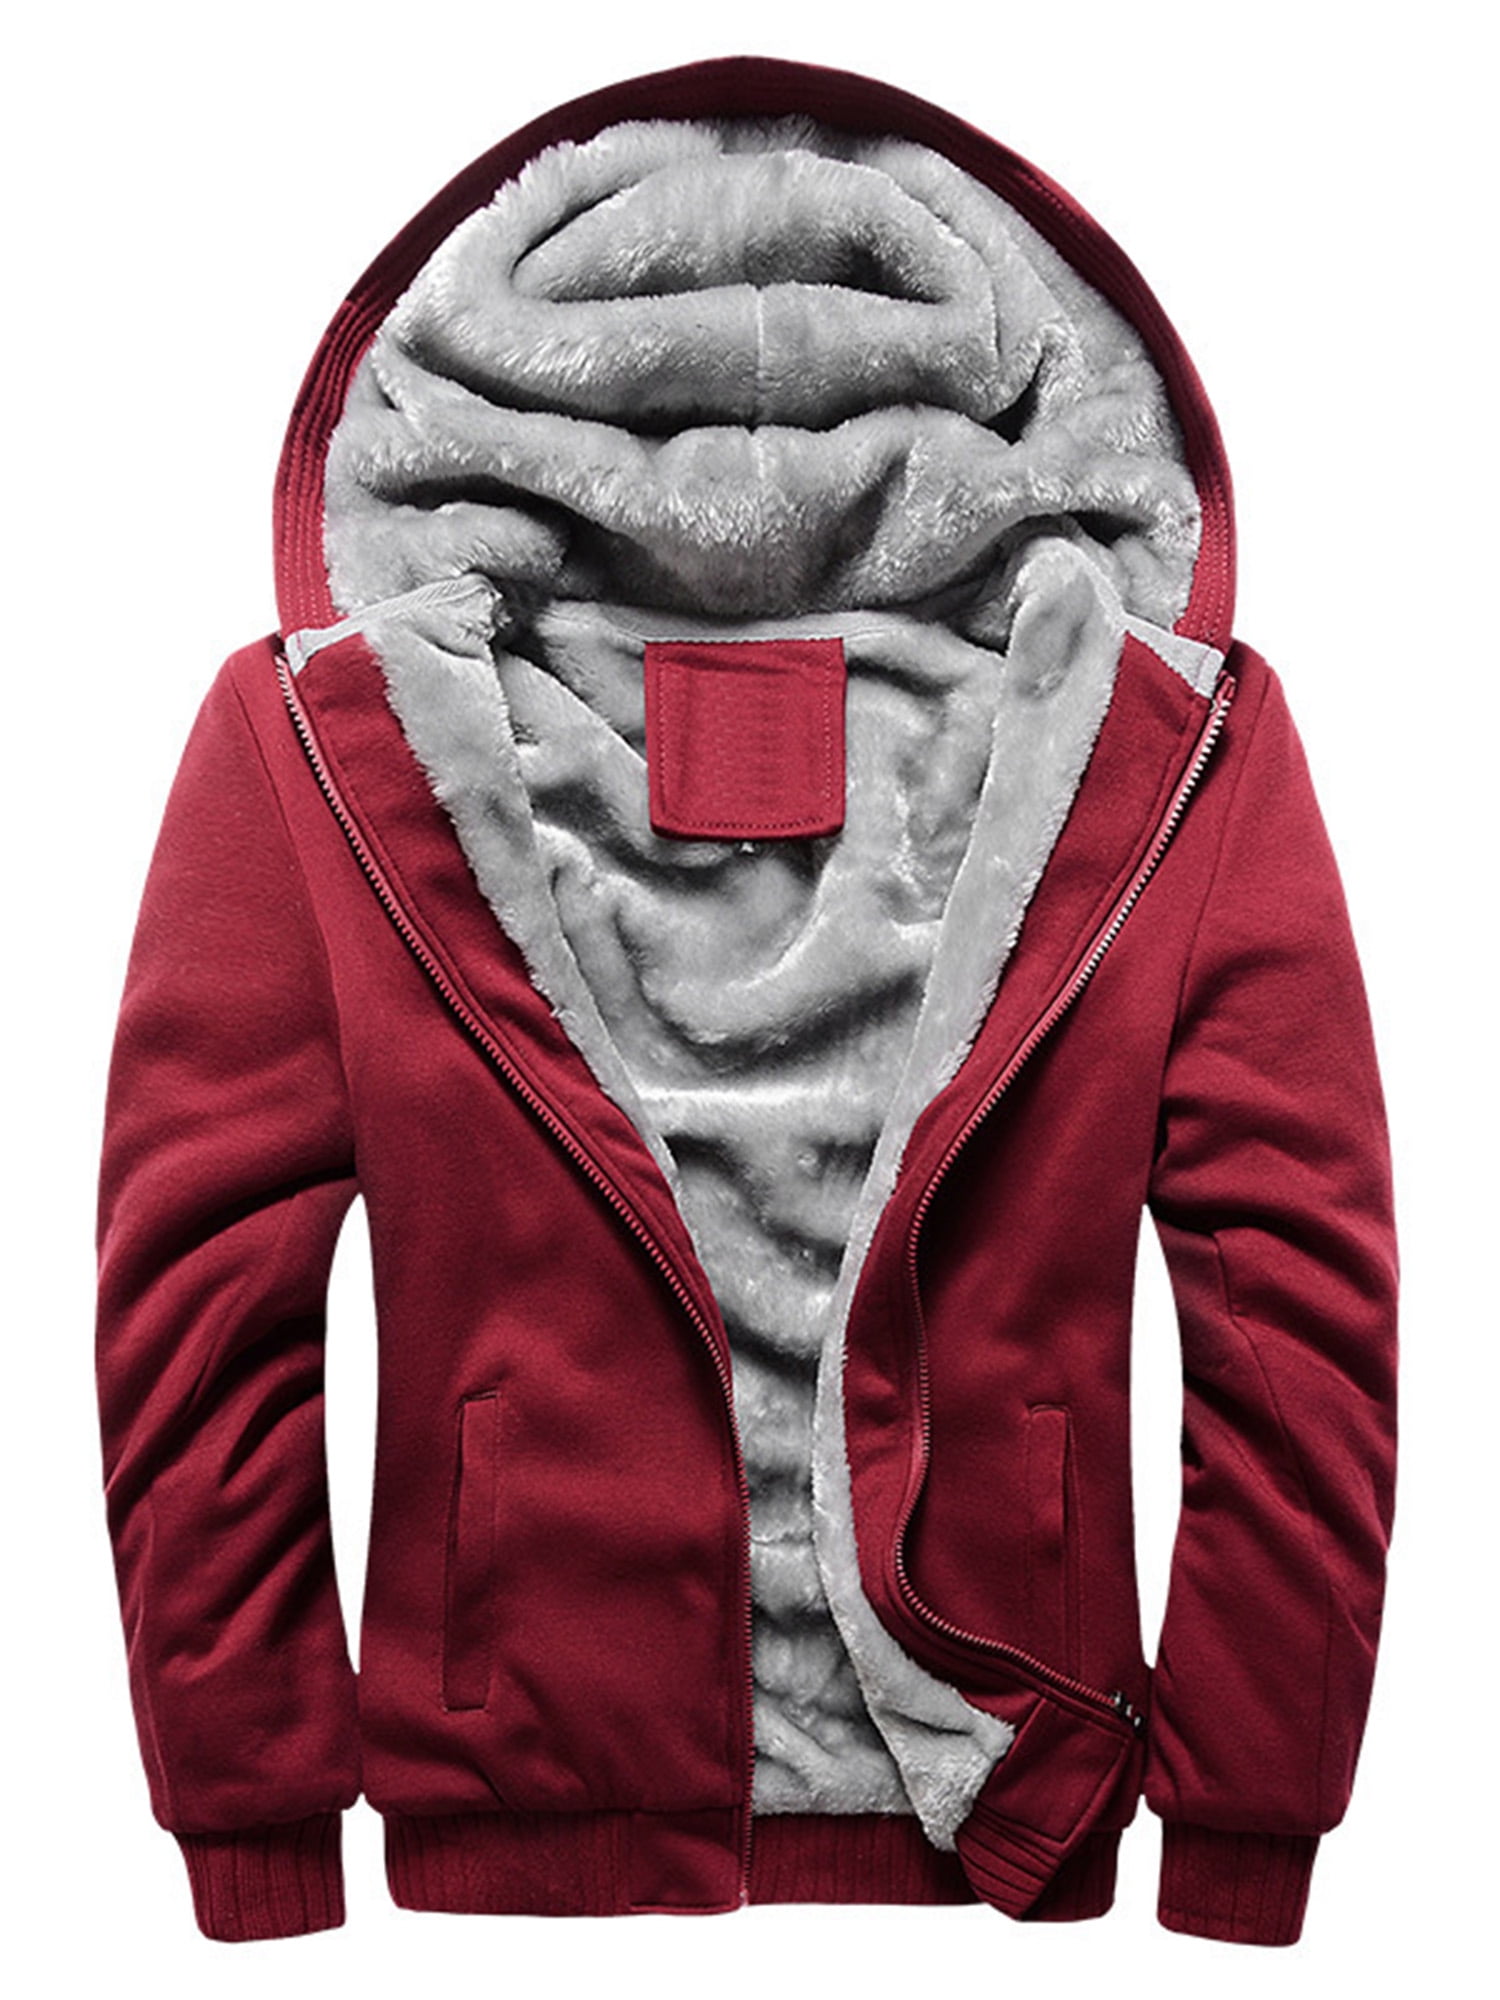 Ghsywgy Mens Fleece Lined Thicken Zipper Long Sleeve Sweatshirt Jacket Hoodie Outwear 